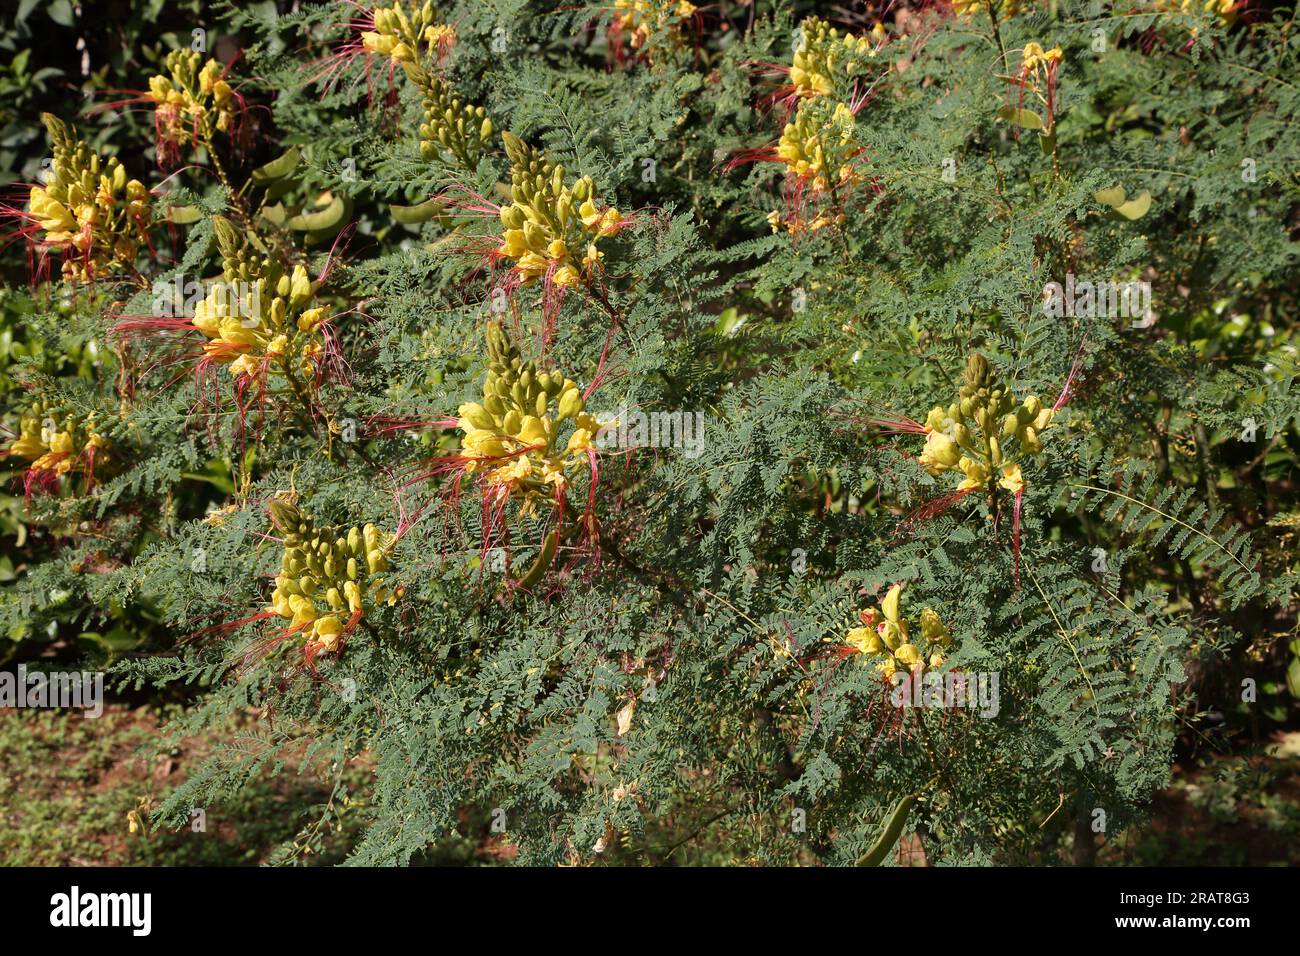 Vouliagmeni Attica Grèce oiseau jaune du Paradis (Caesalpinia Gilliesi) arbuste aux fleurs jaunes et longues étamines rouges Banque D'Images